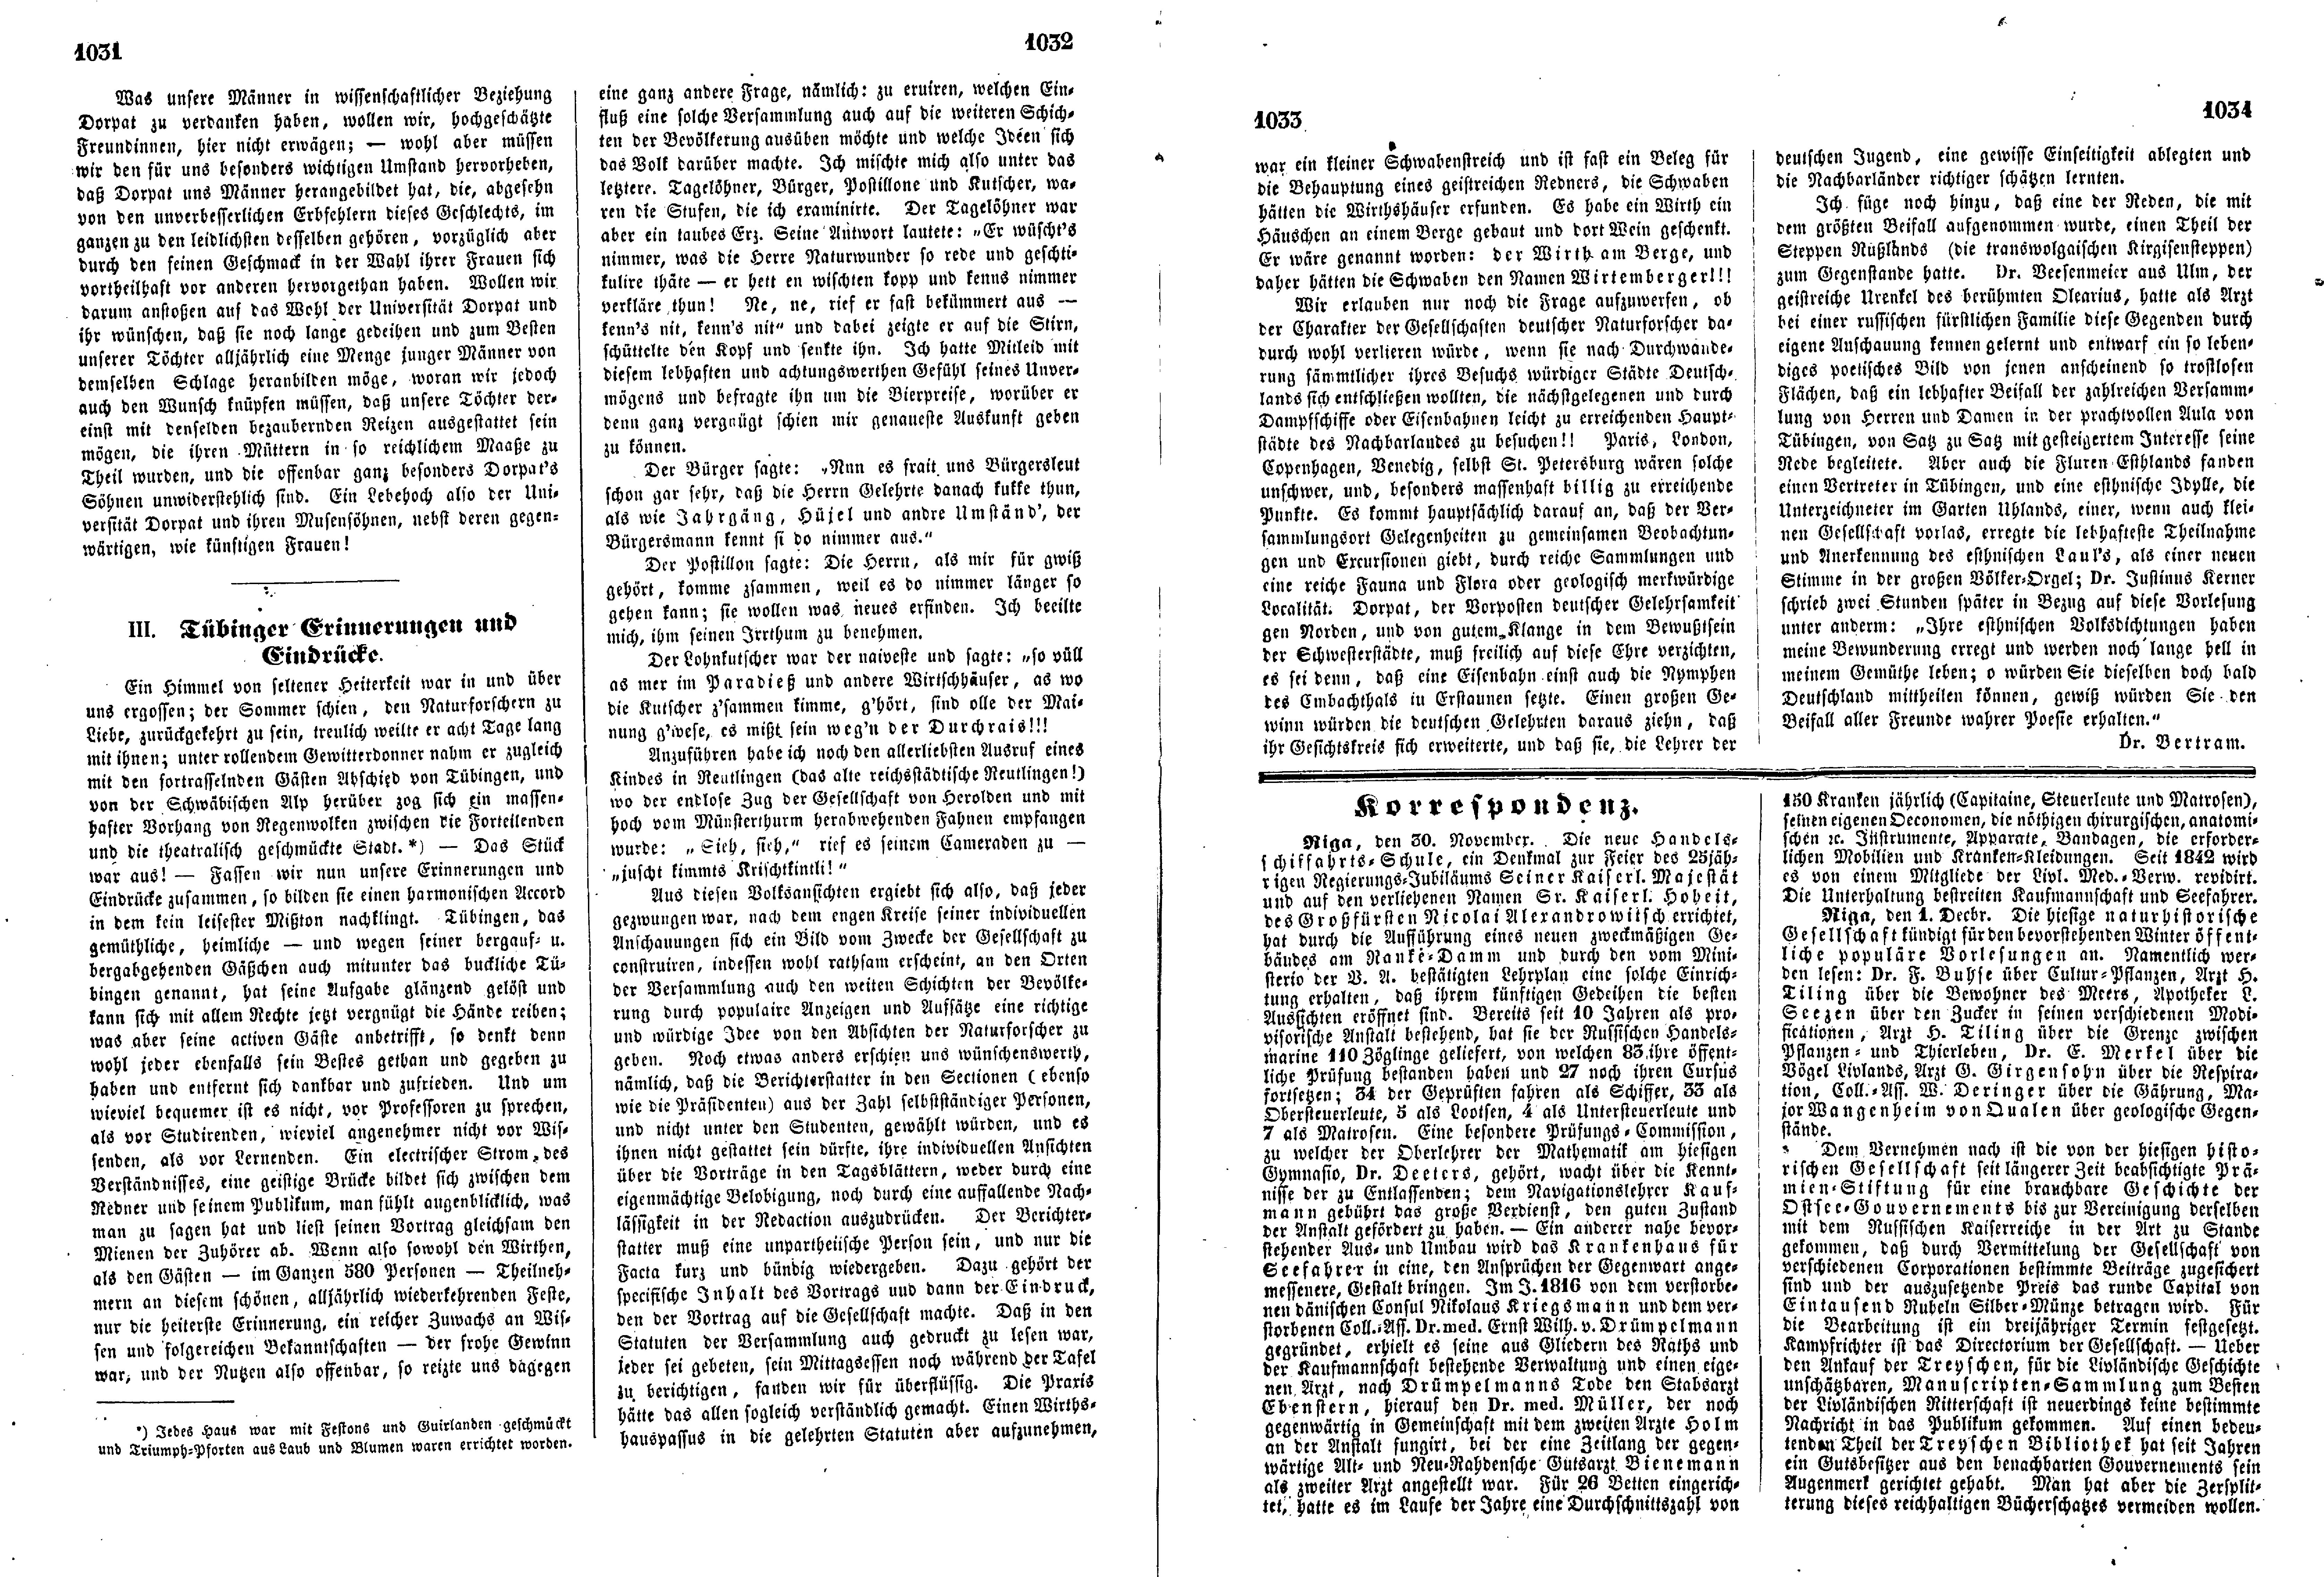 Tübinger Erinnerungen und Eindrücke (1853) | 1. (1031-1034) Основной текст